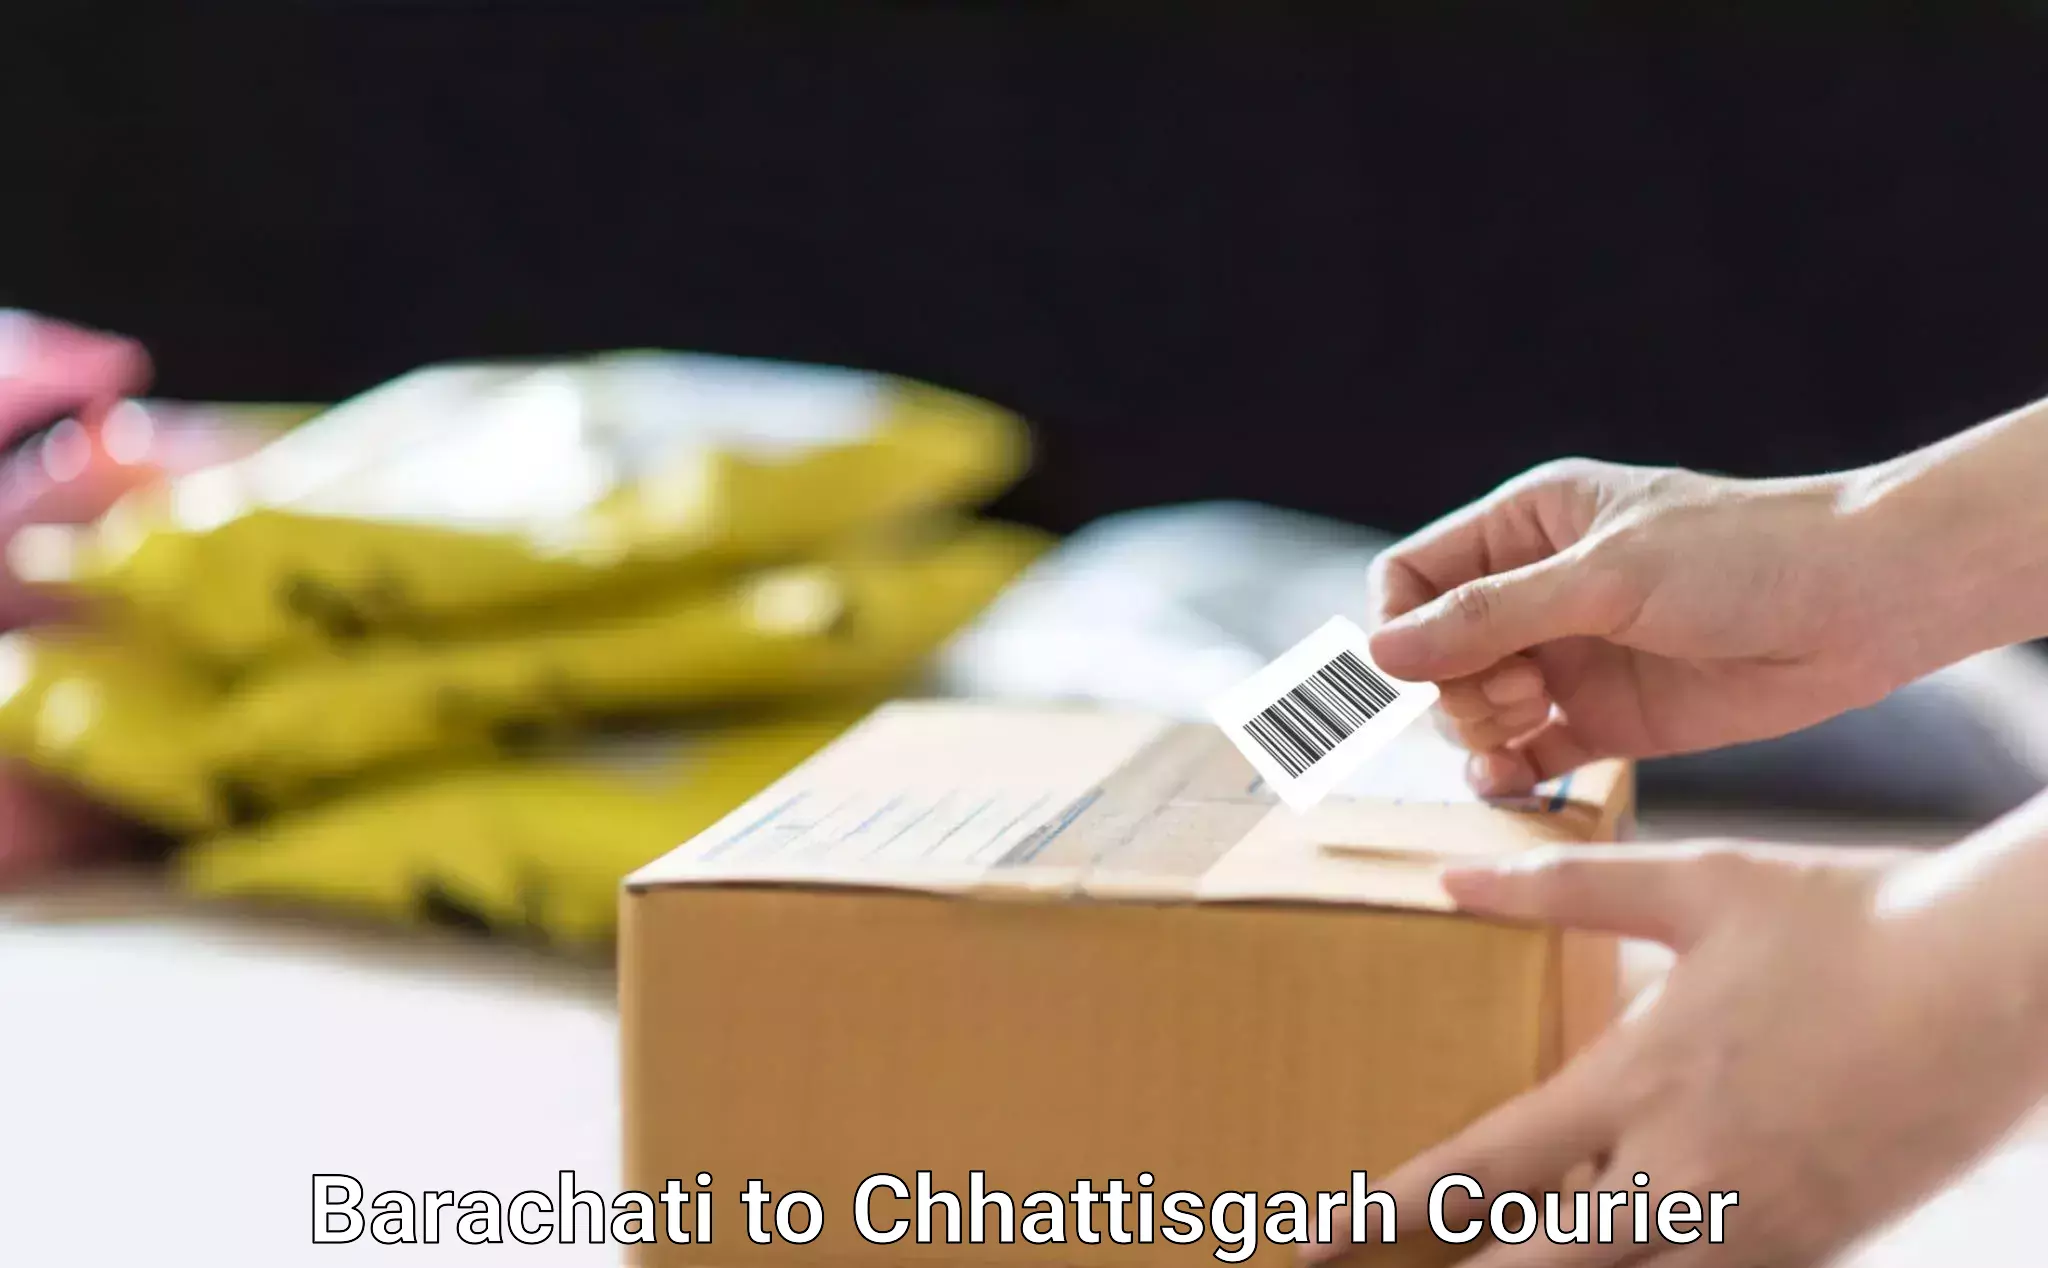 Furniture transport experts Barachati to Raigarh Chhattisgarh